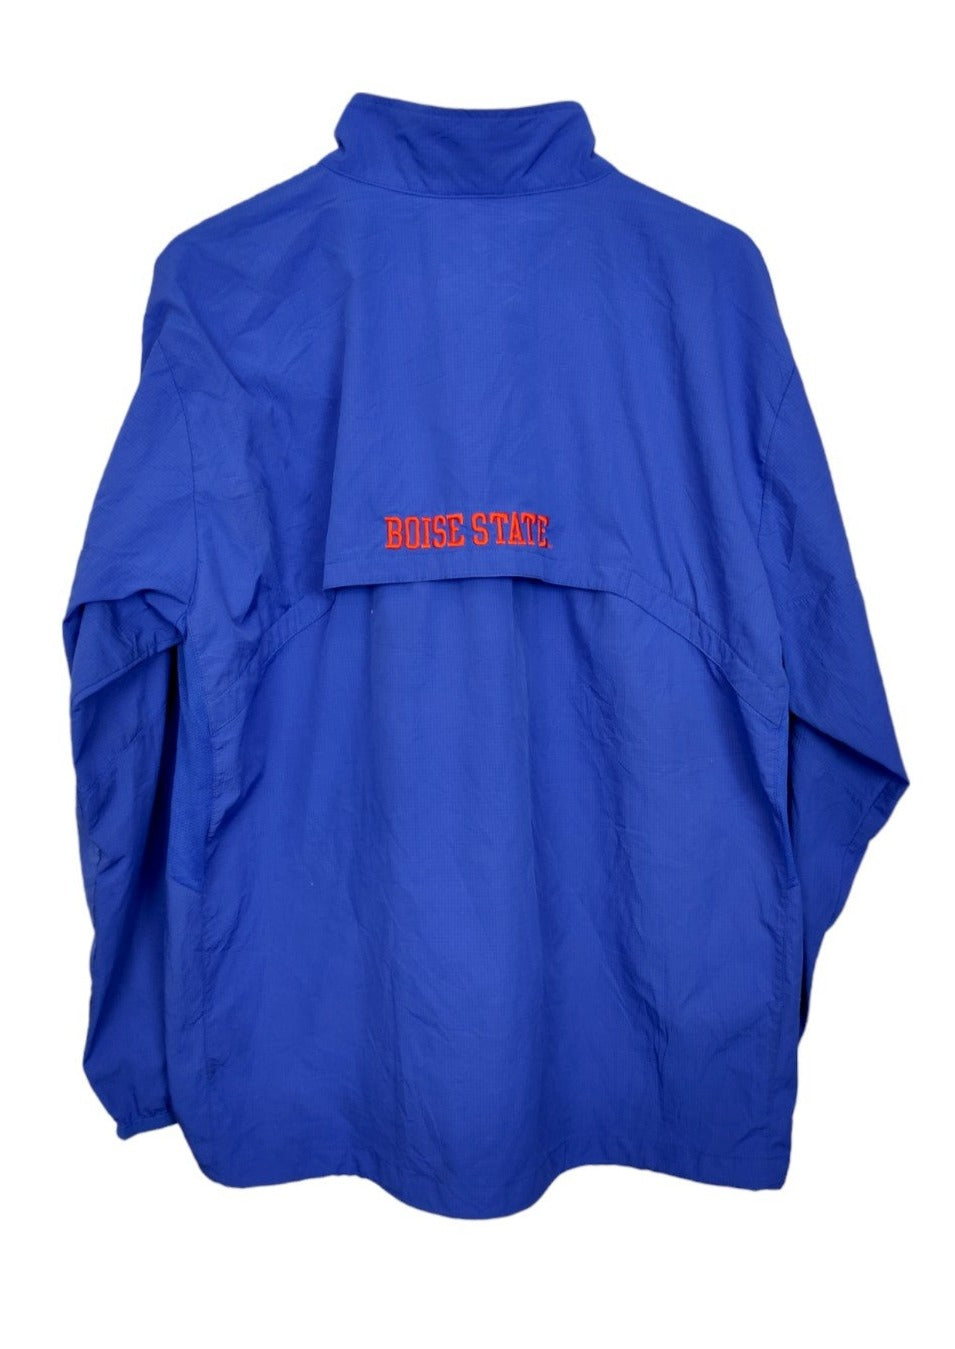 Αθλητική Ανδρική Μπλούζα BOISE STATE σε Μπλε - Πορτοκαλί χρώμα (Large)